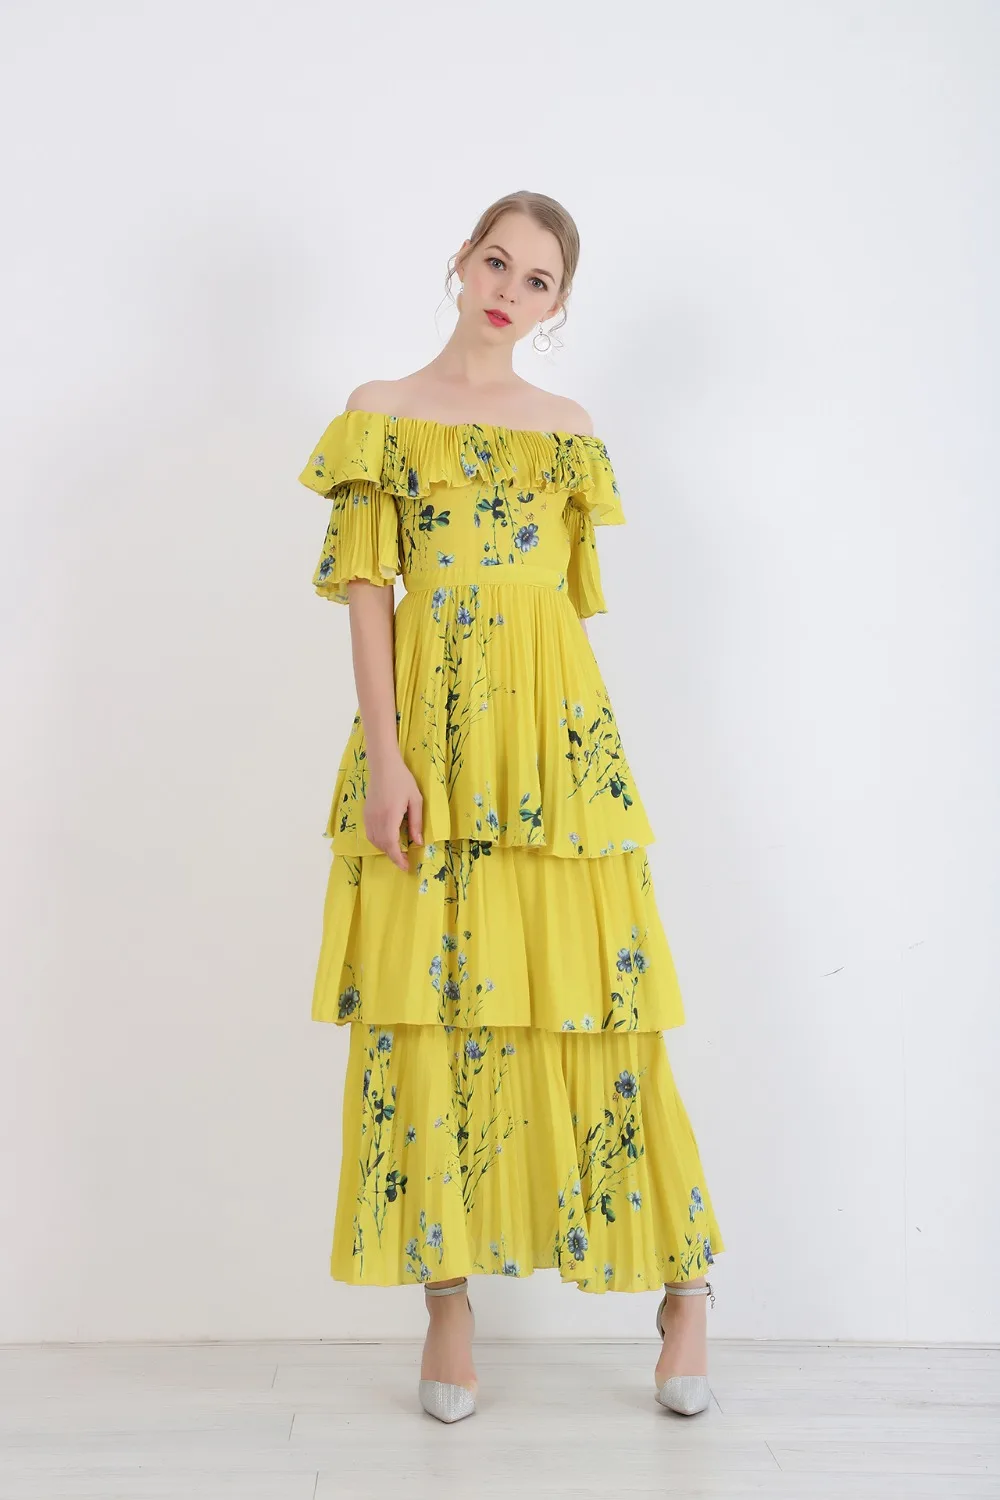 Женское длинное платье в богемном стиле SMTHMA, желтое дизайнерское платье из высококачественной ткани с принтом, плиссированными оборками, стильный подиумный наряд